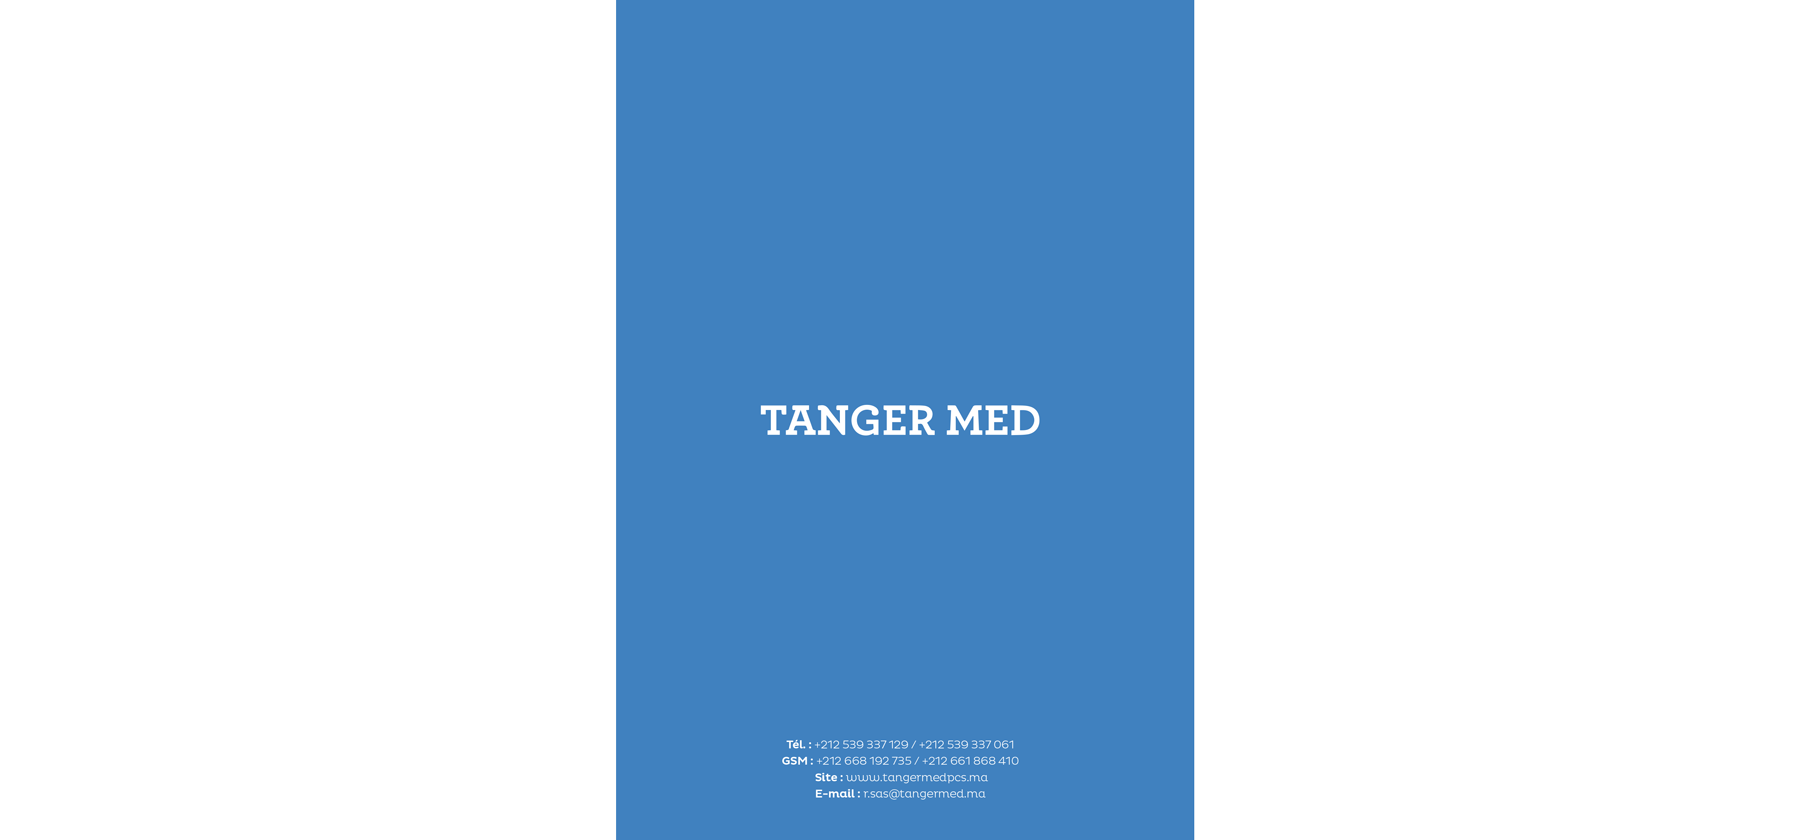 Tanger Med Port Community System